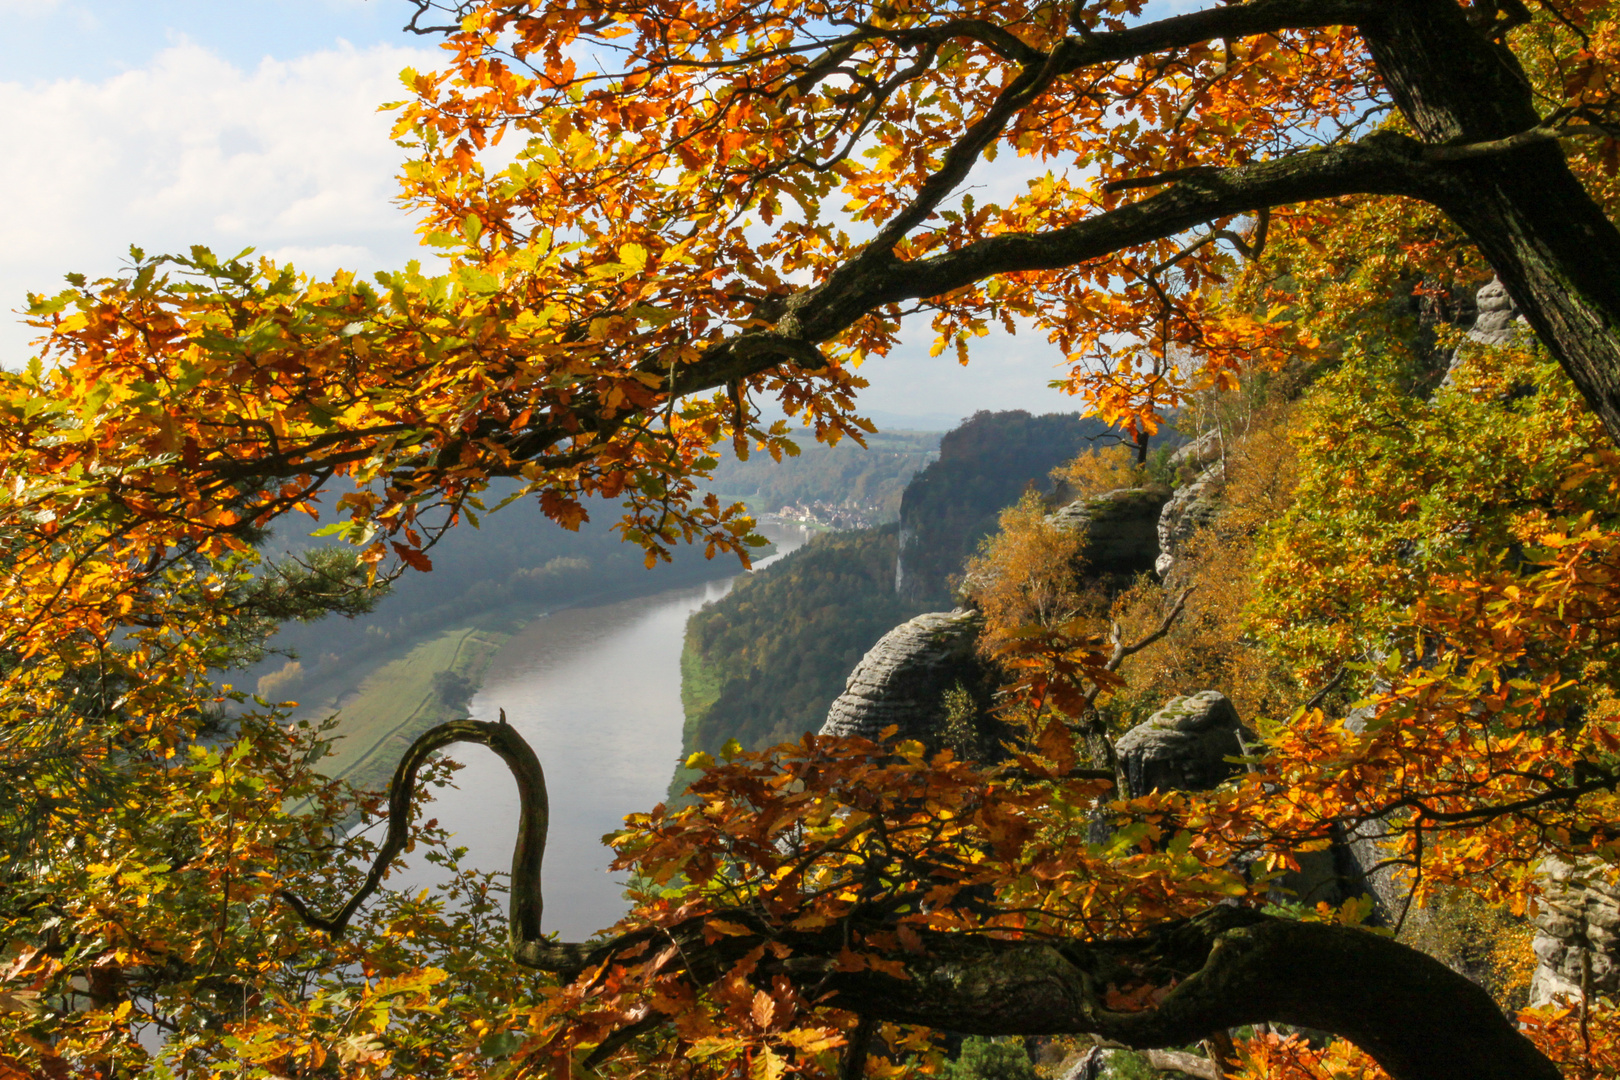 Herbstliche Farbenpracht oberhalb des Elbtals bei Rathen